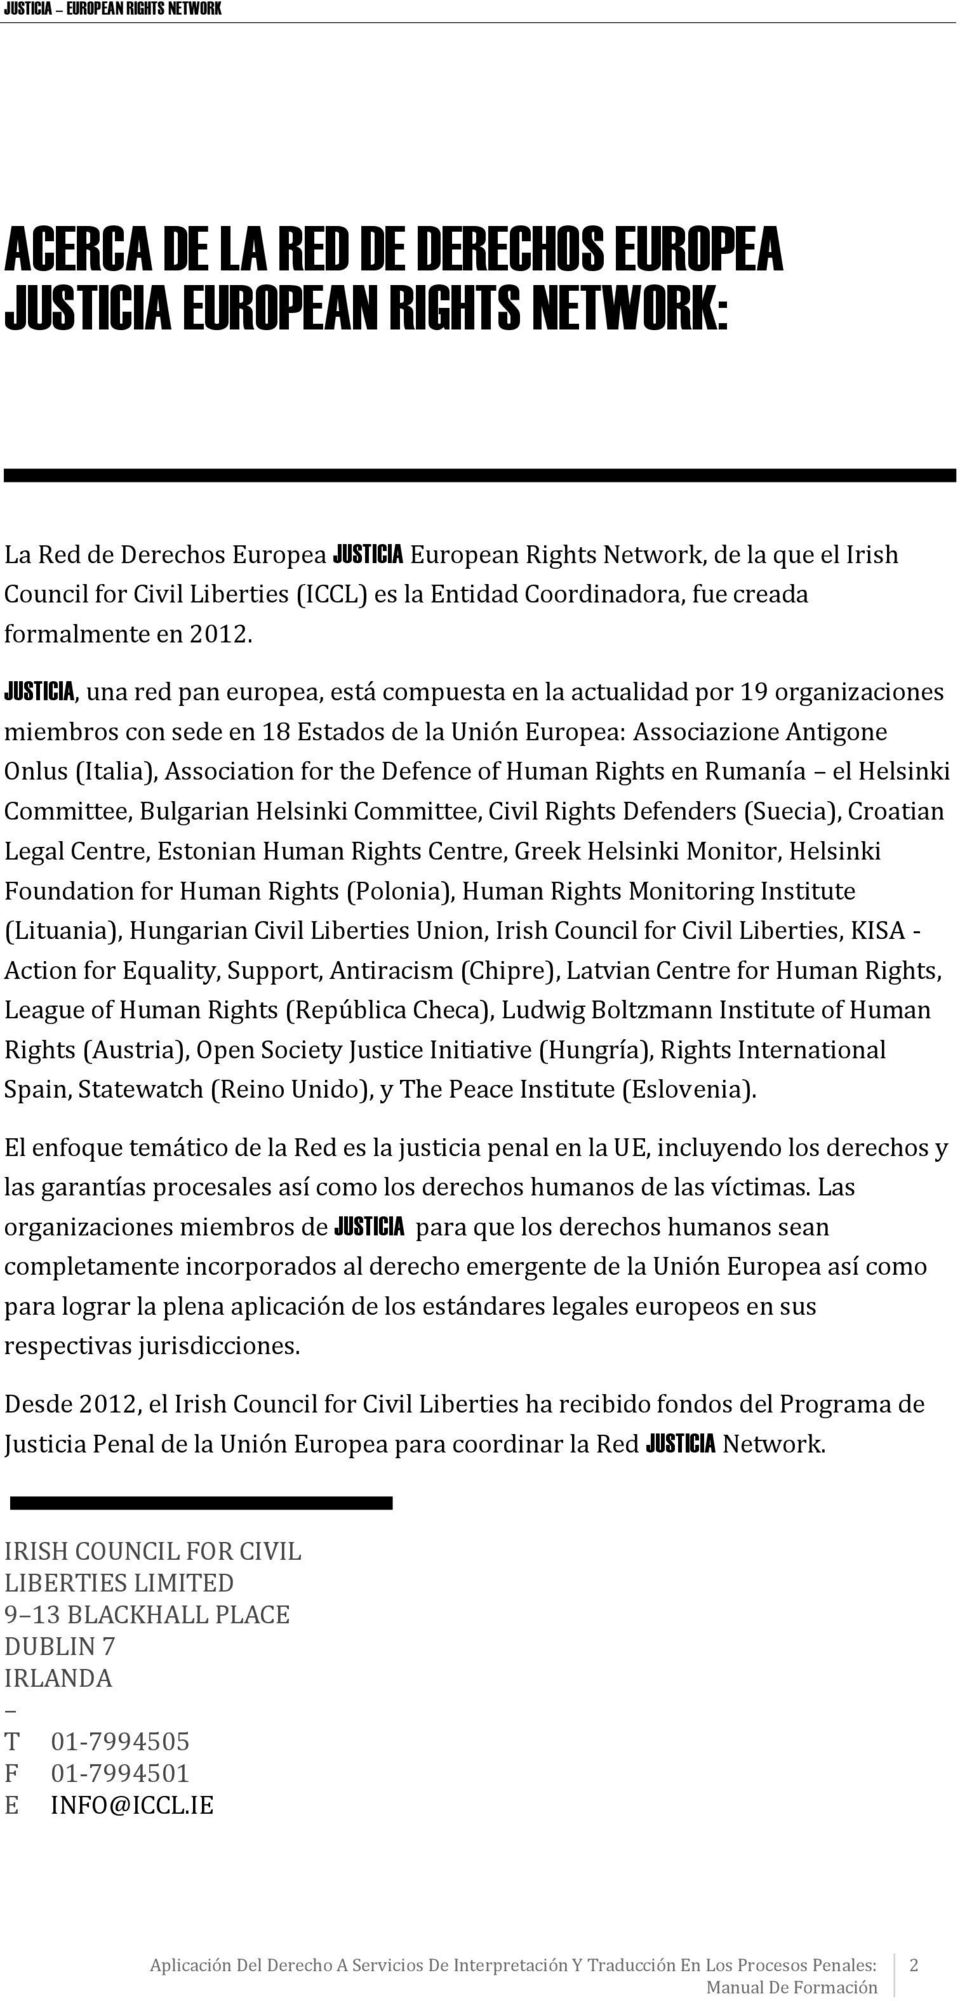 JUSTICIA, una red pan europea, está compuesta en la actualidad por 19 organizaciones miembros con sede en 18 Estados de la Unión Europea: Associazione Antigone Onlus (Italia), Association for the